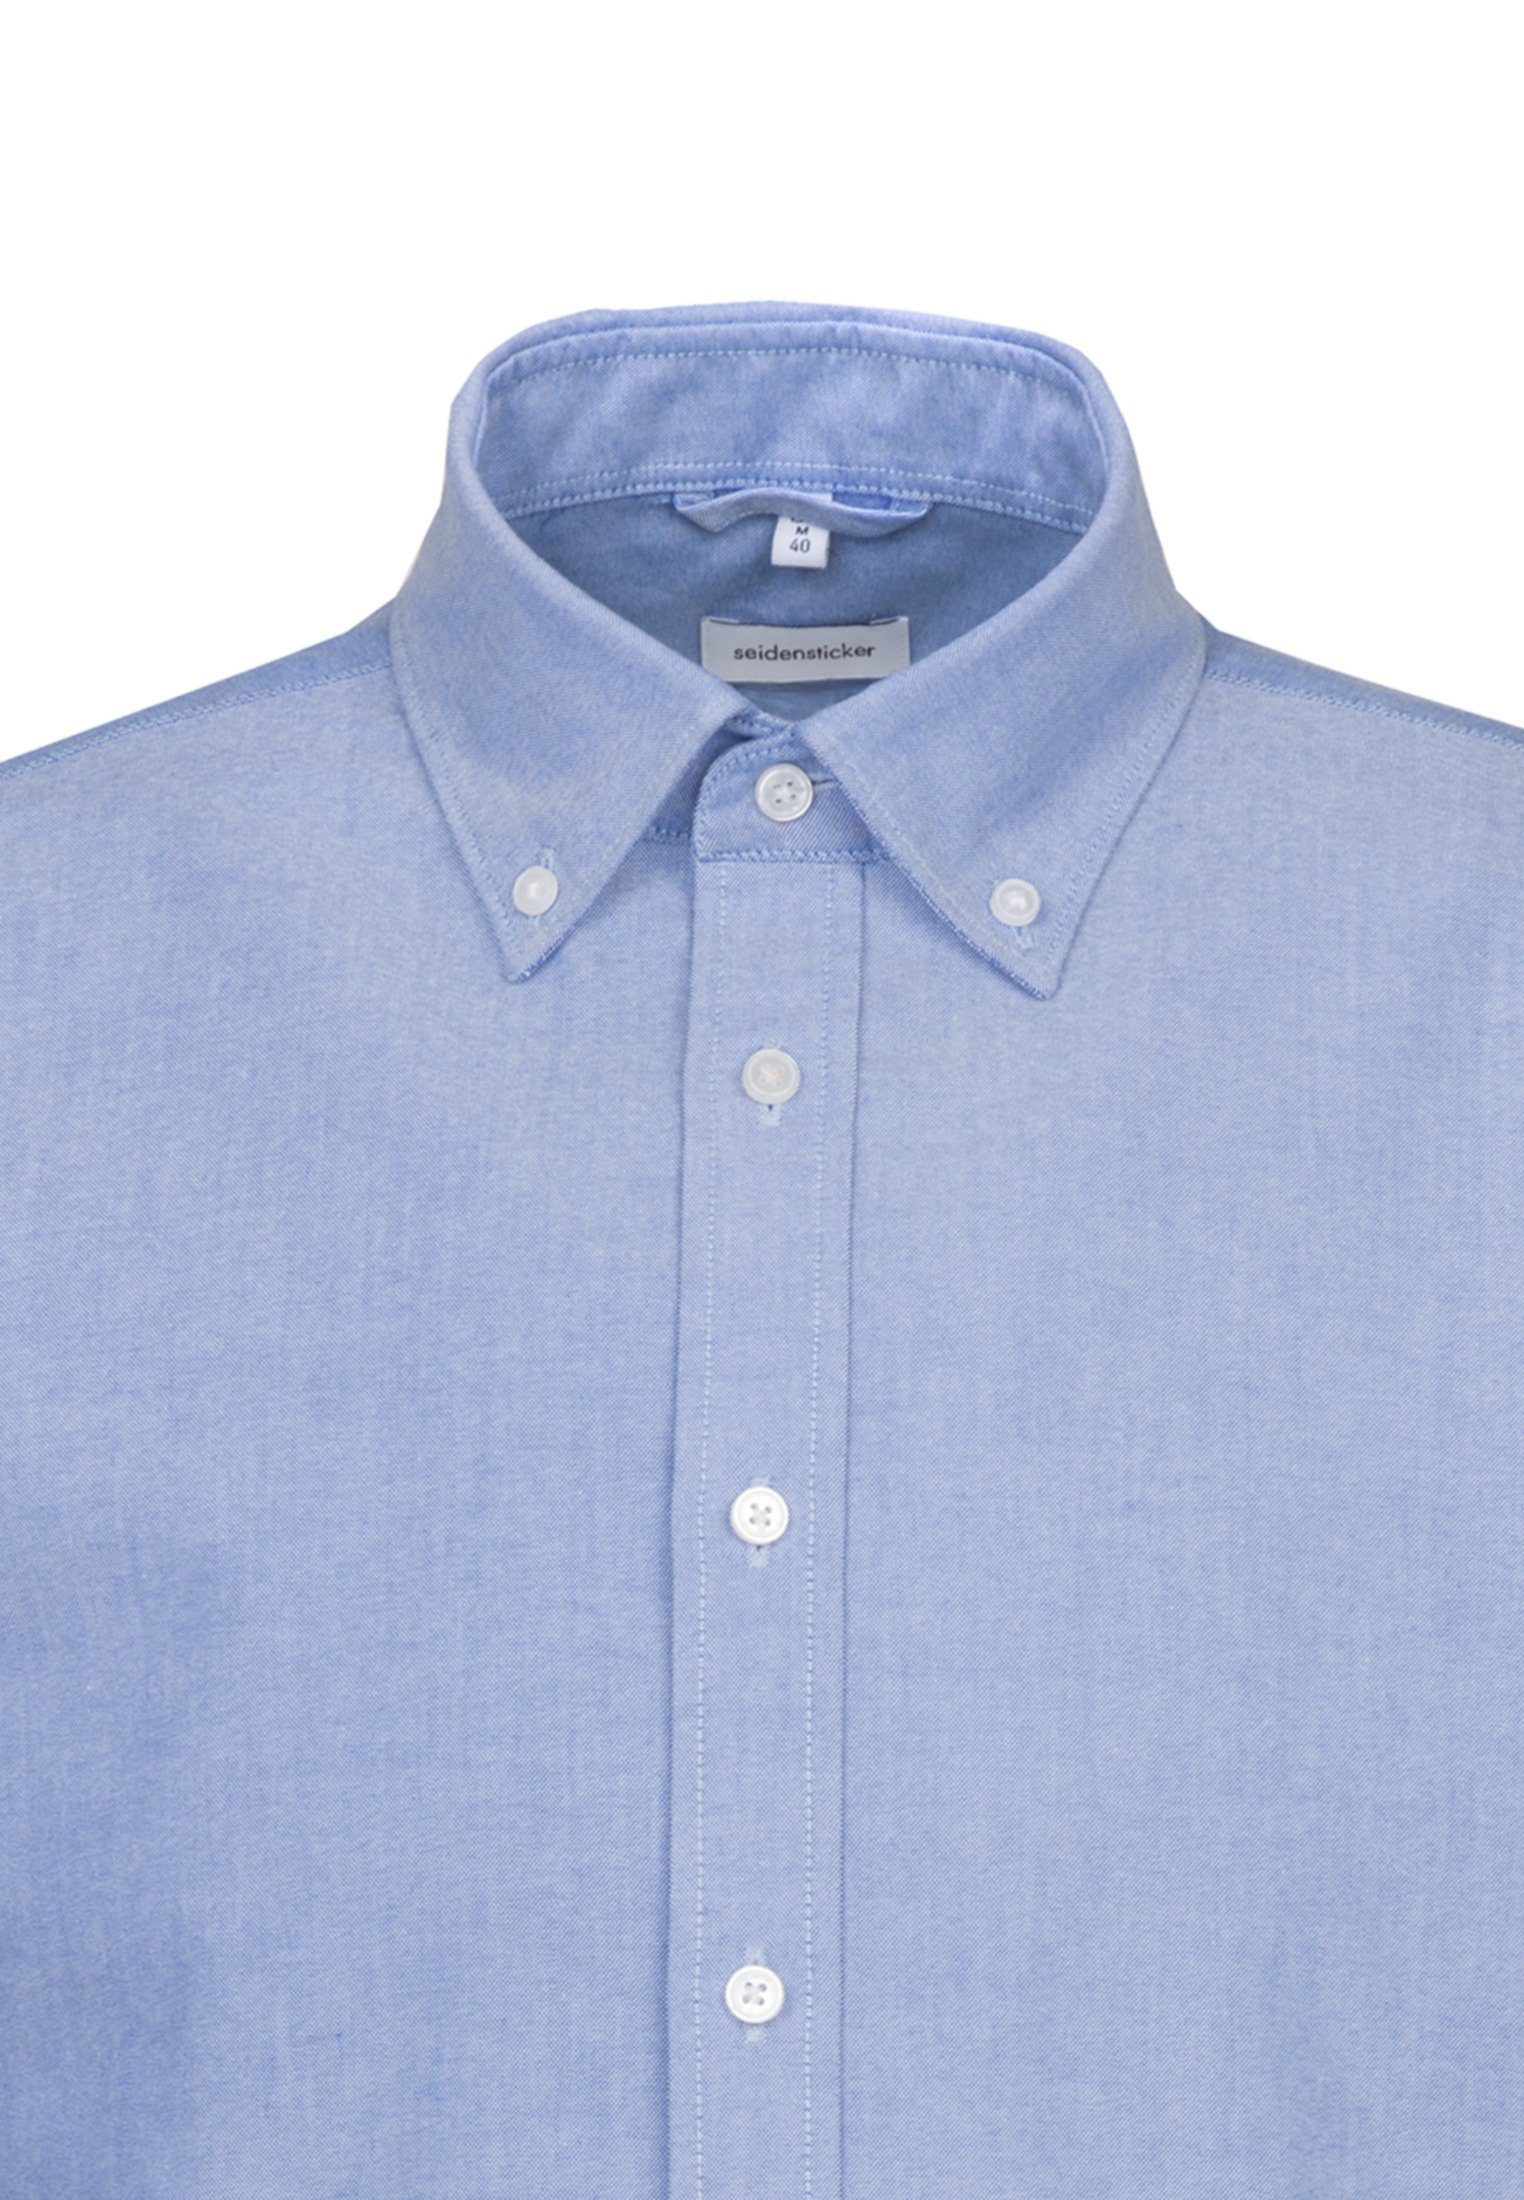 Regular Button-Down-Kragen Hellblau Uni Businesshemd Regular seidensticker Langarm